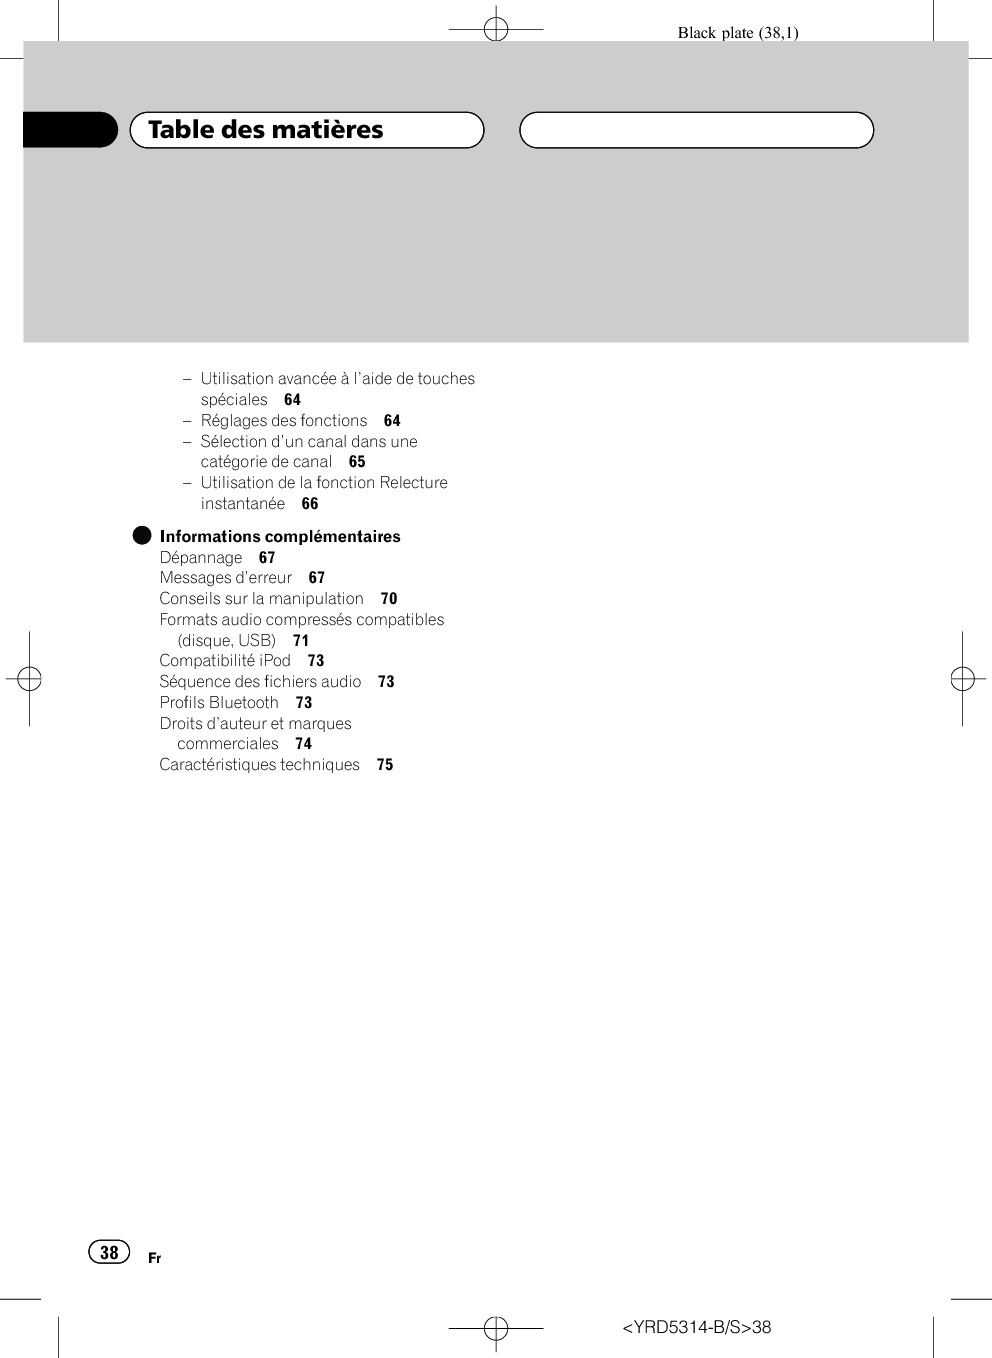 Black plate (38,1)–Utilisation avancée à l’aide de touchesspéciales 64–Réglages des fonctions 64–Sélection d’un canal dans unecatégorie de canal 65–Utilisation de la fonction Relectureinstantanée 66Informations complémentairesDépannage 67Messages d’erreur 67Conseils sur la manipulation 70Formats audio compressés compatibles(disque, USB) 71Compatibilité iPod 73Séquence des fichiers audio 73Profils Bluetooth 73Droits d’auteur et marquescommerciales 74Caractéristiques techniques 75&lt;YRD5314-B/S&gt;38Table des matièresFr38